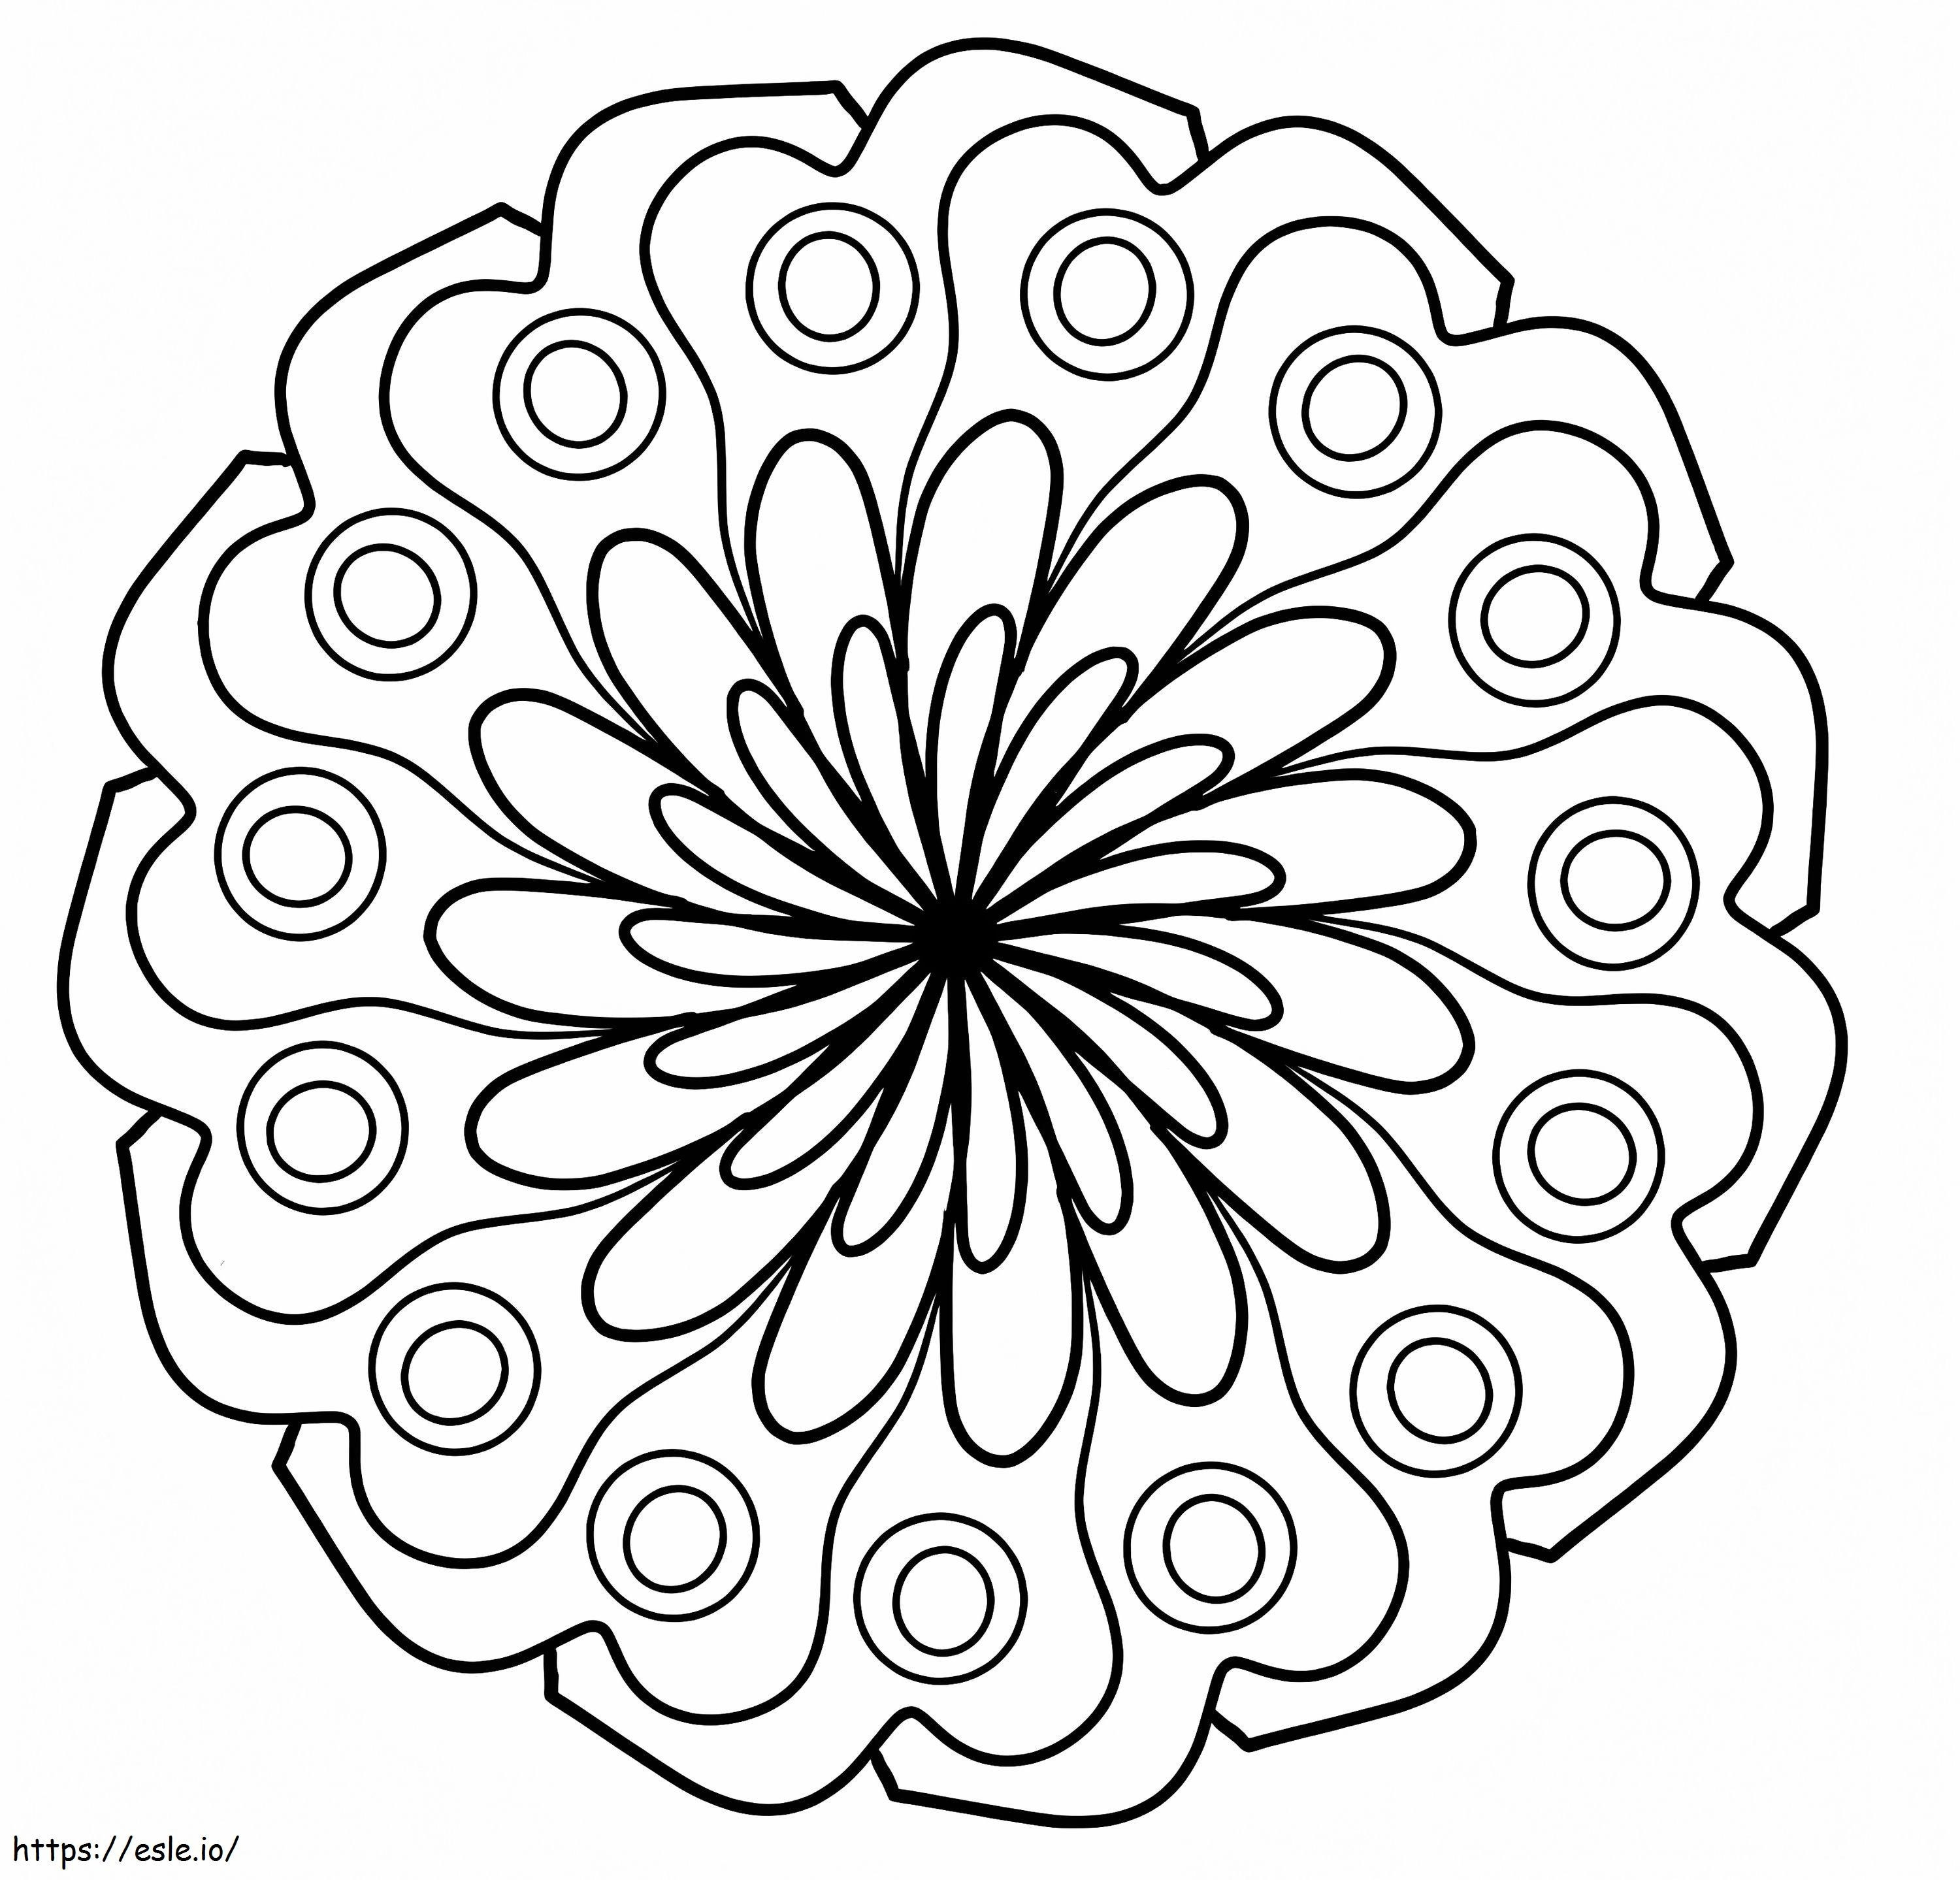 Mandala floreale semplice da colorare